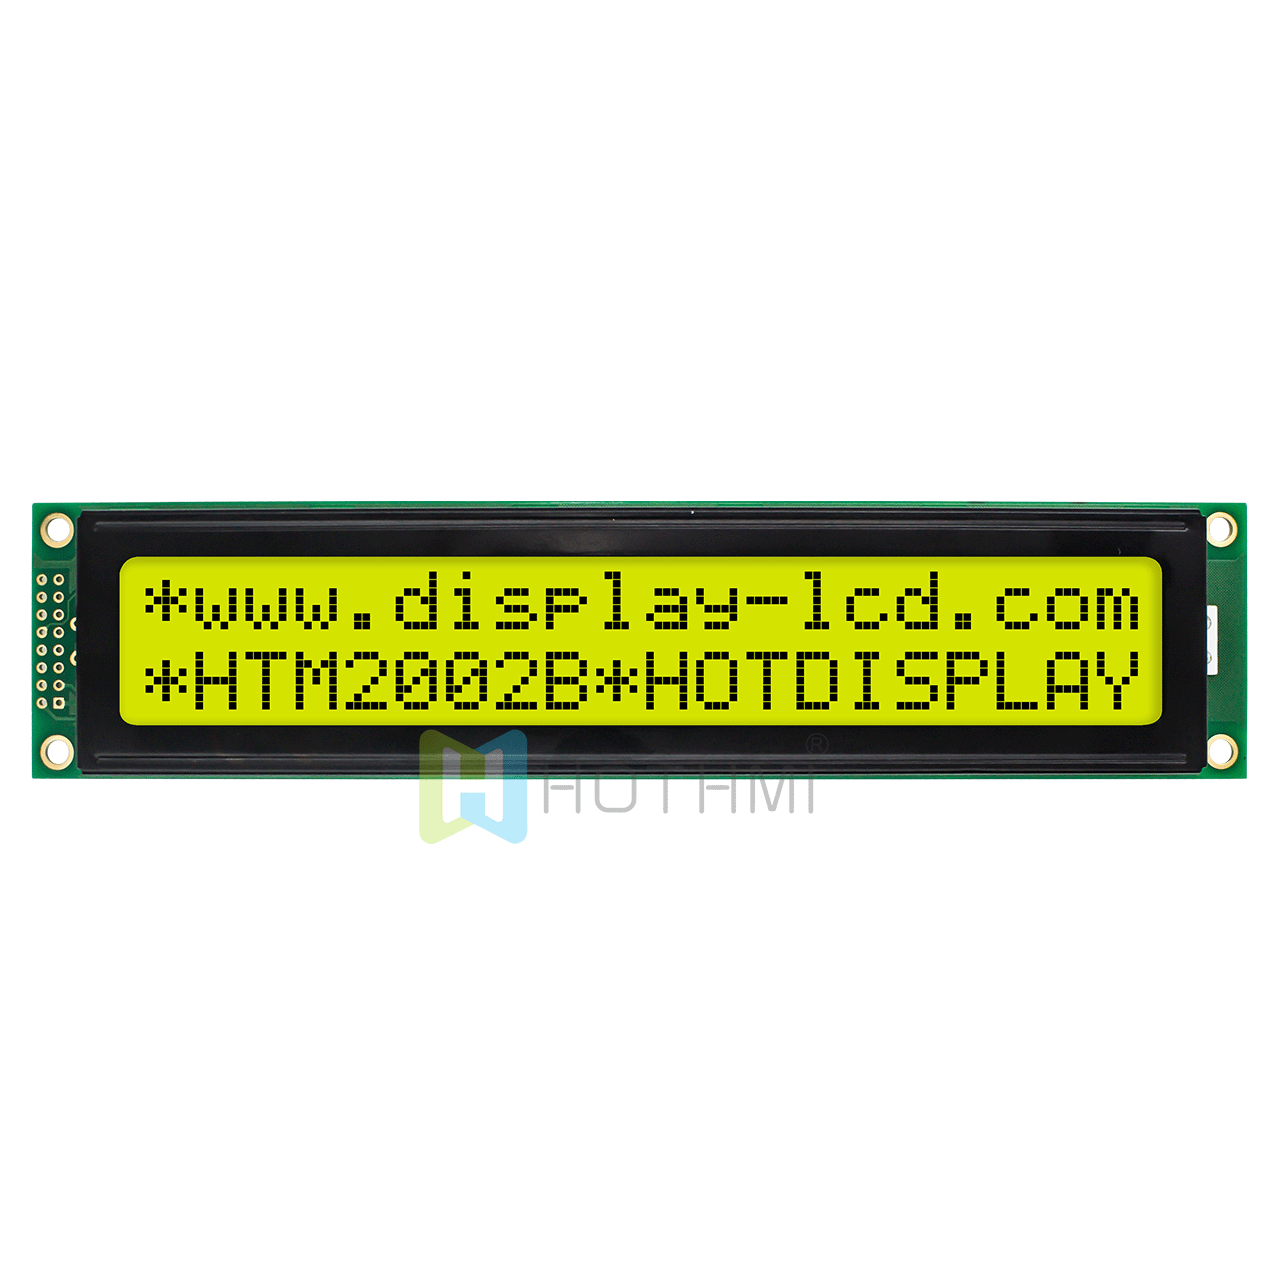 20X2 字符单色液晶屏模组 /STN正显/ 黄绿背光/5.0V/ST7066U控制/Adruino/半透反射式显示屏/宽温